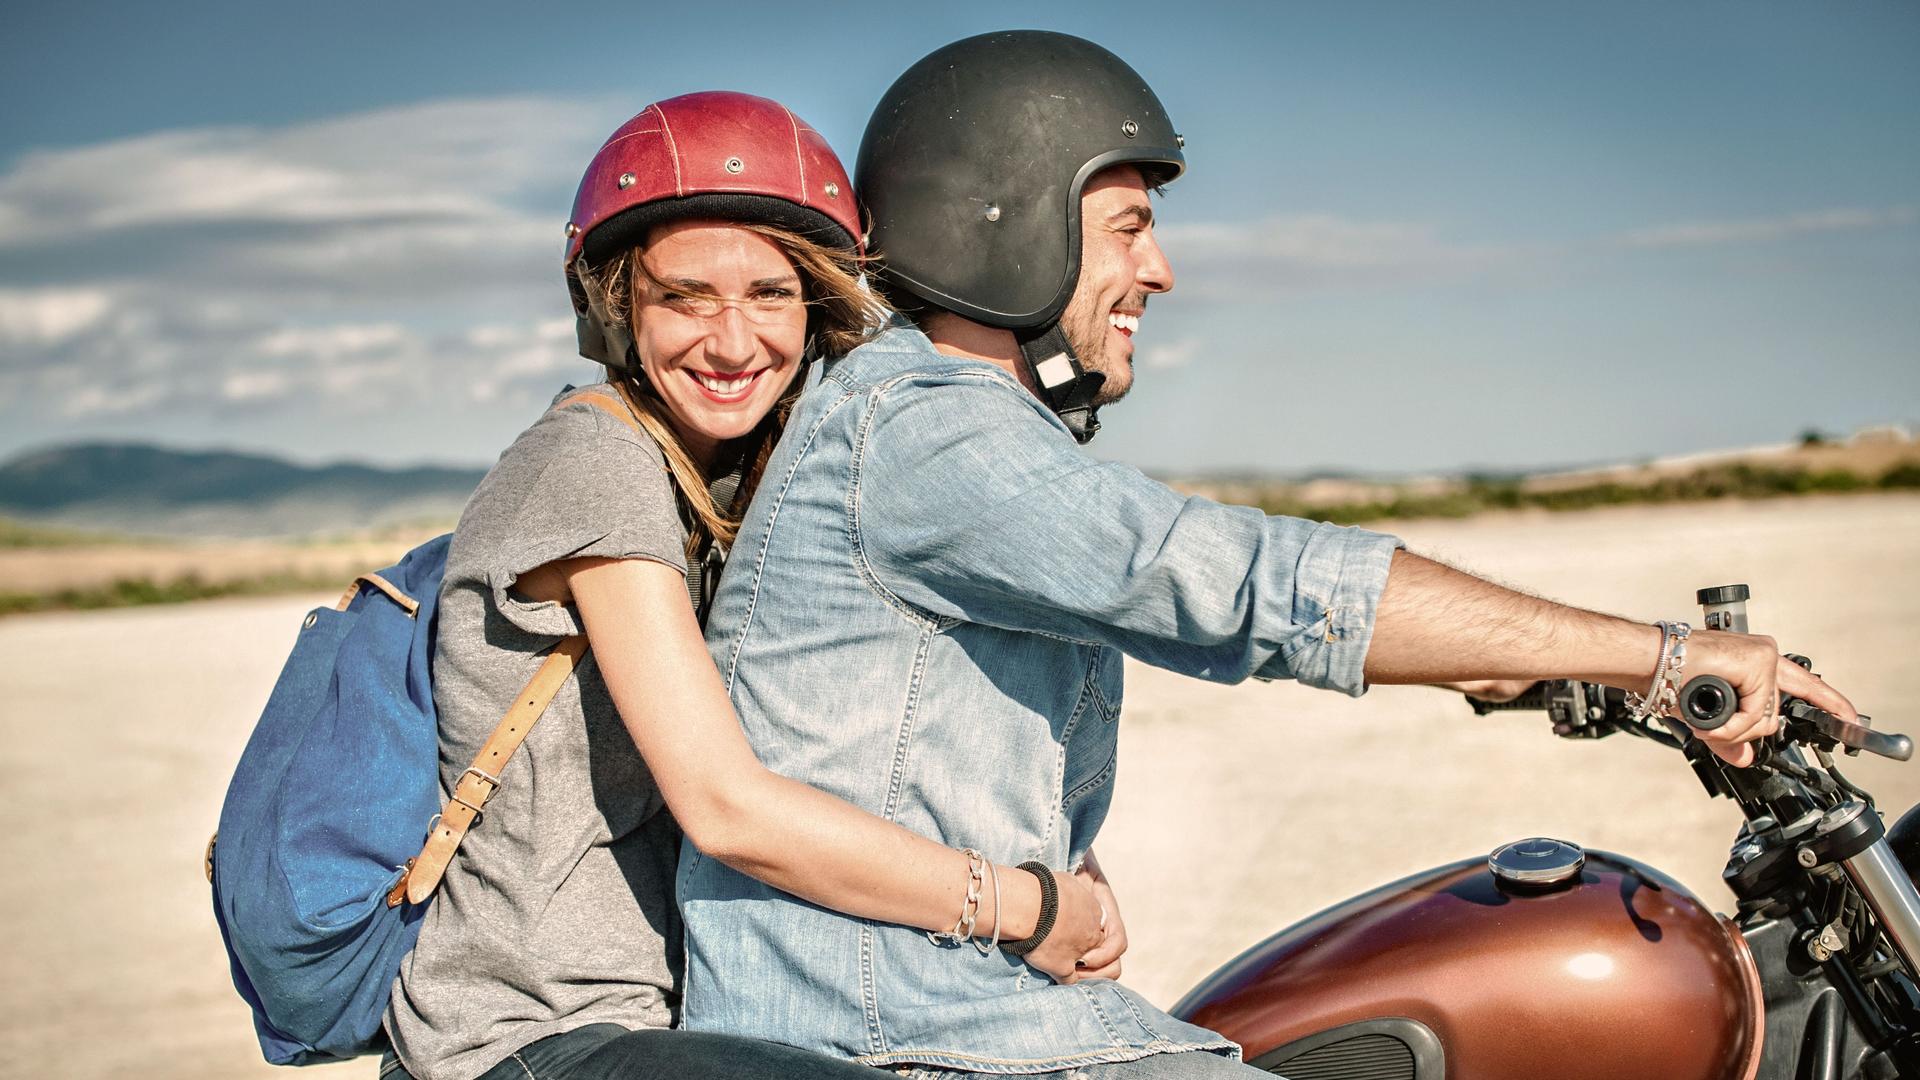 Frau und Mann fahren auf einem Motorrad am Strand. Sie lächelt in die Kamera.